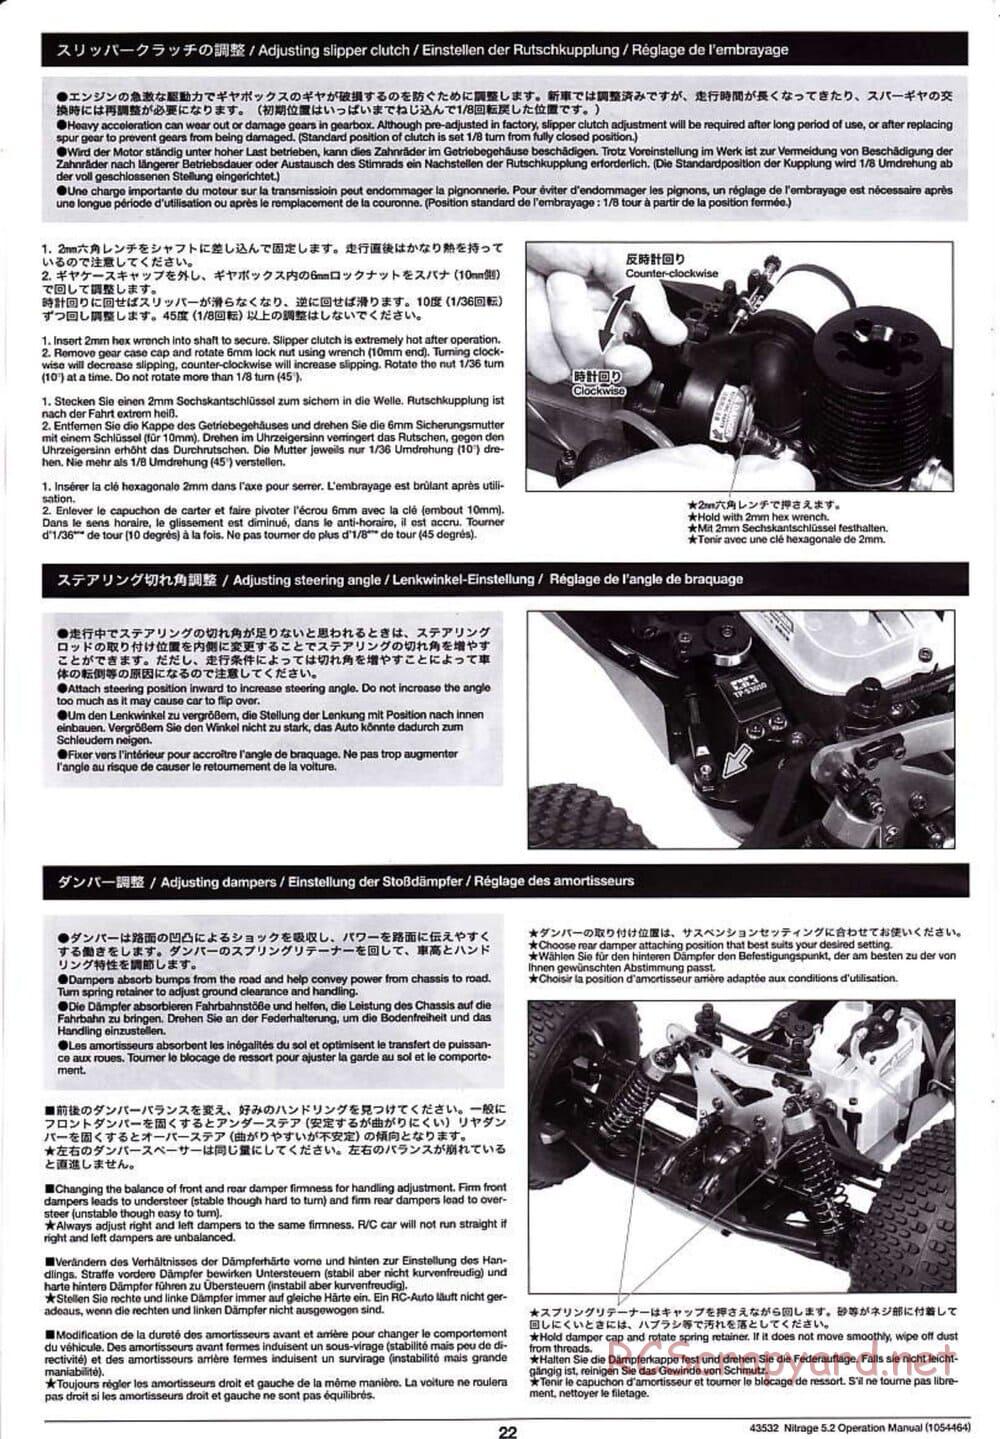 Tamiya - Nitrage 5.2 - Operating Manual - Page 22